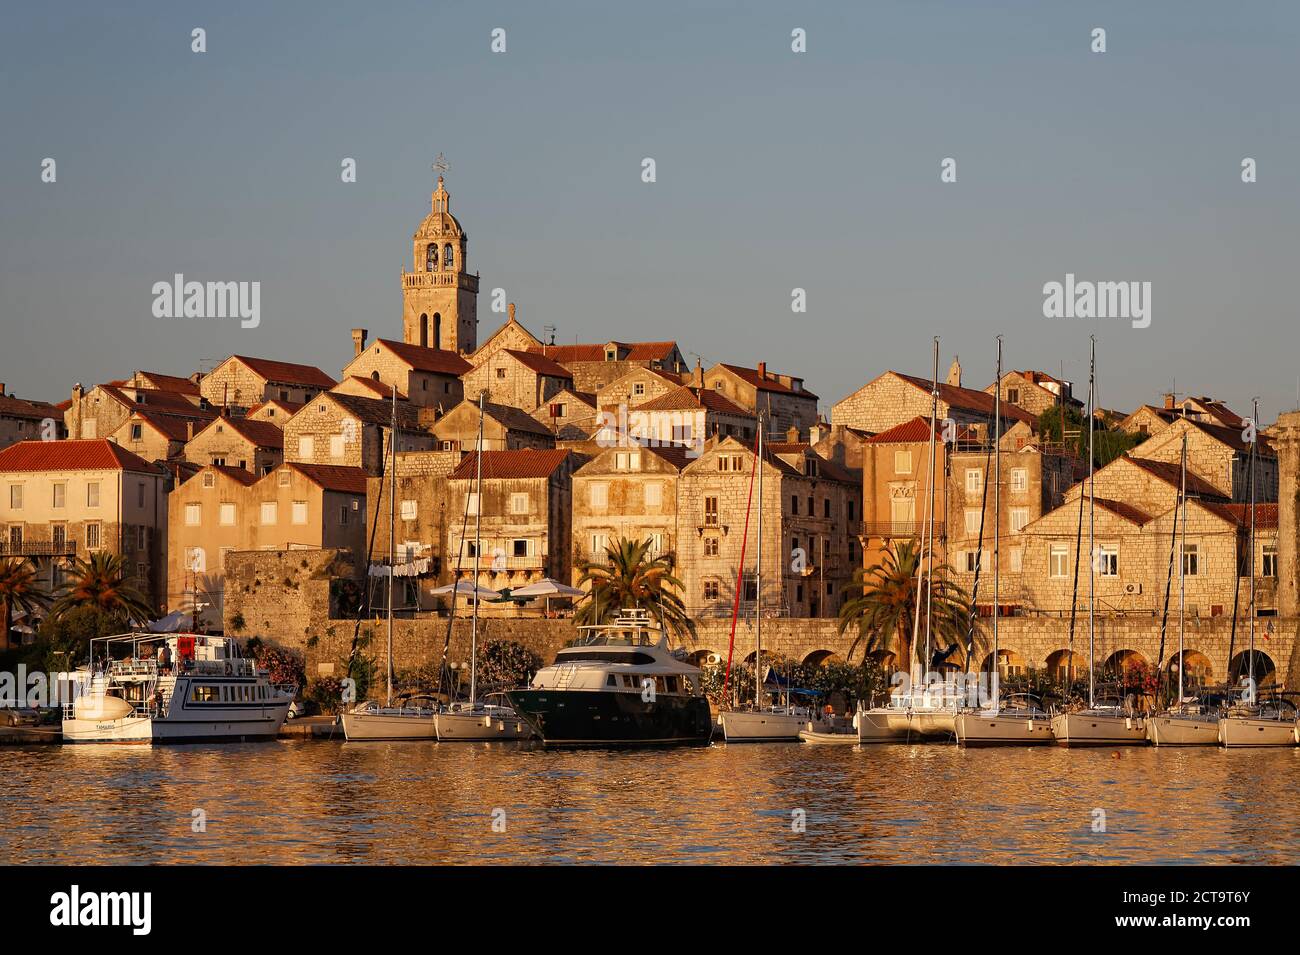 La Croatie, Dubrovnik-Neretva, l''île de Korcula, Korcula, paysage urbain et le port dans la soirée Banque D'Images